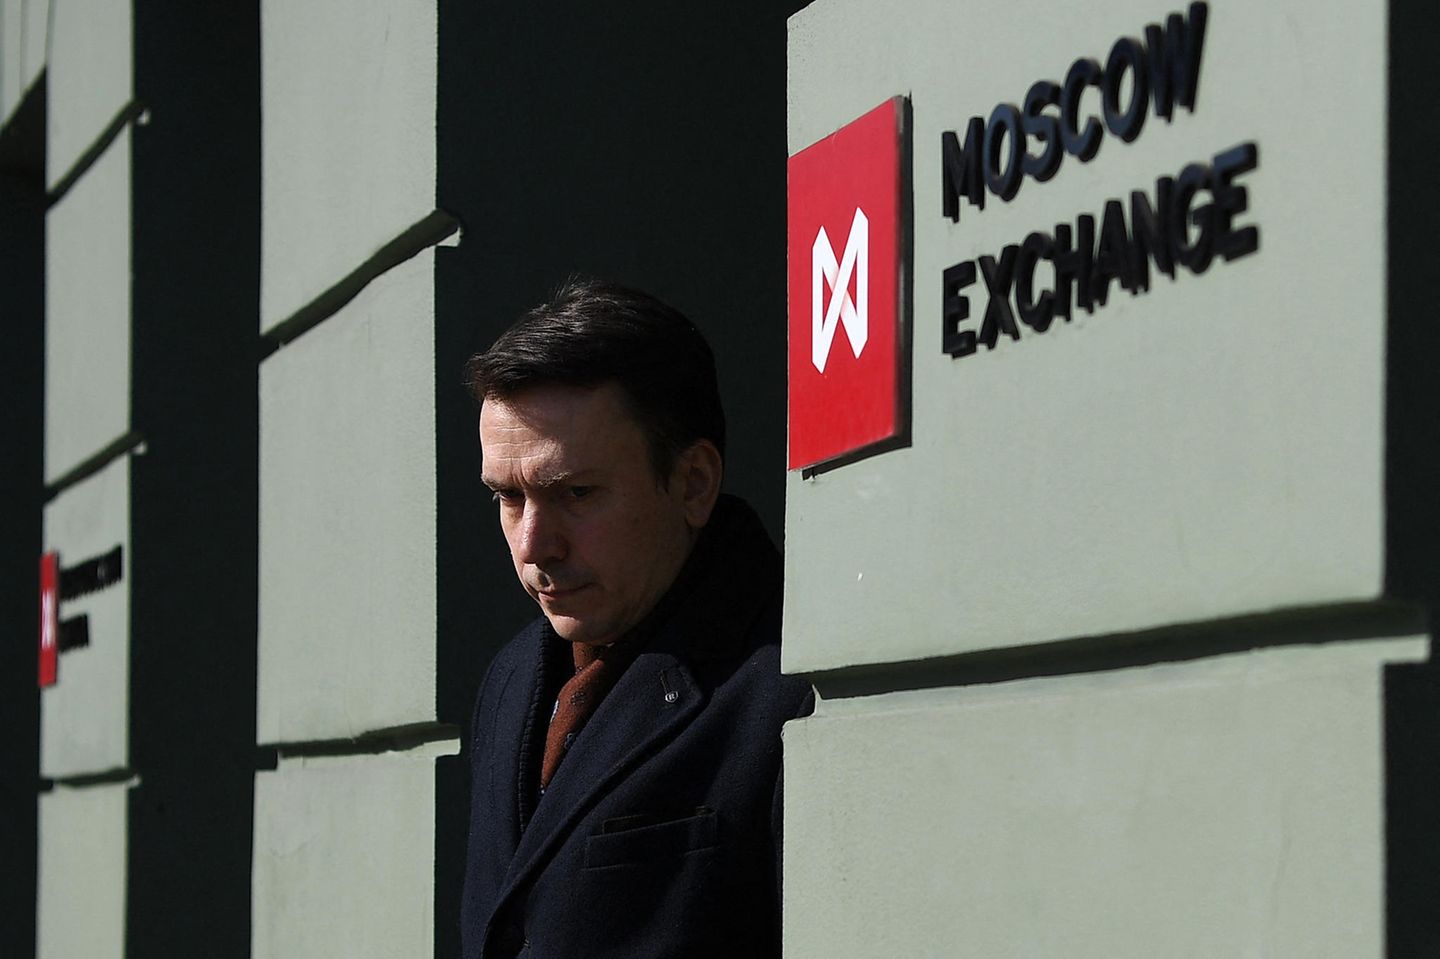 Die Börse in Moskau öffnet schrittweise wieder – aber noch nicht für internationale Investoren